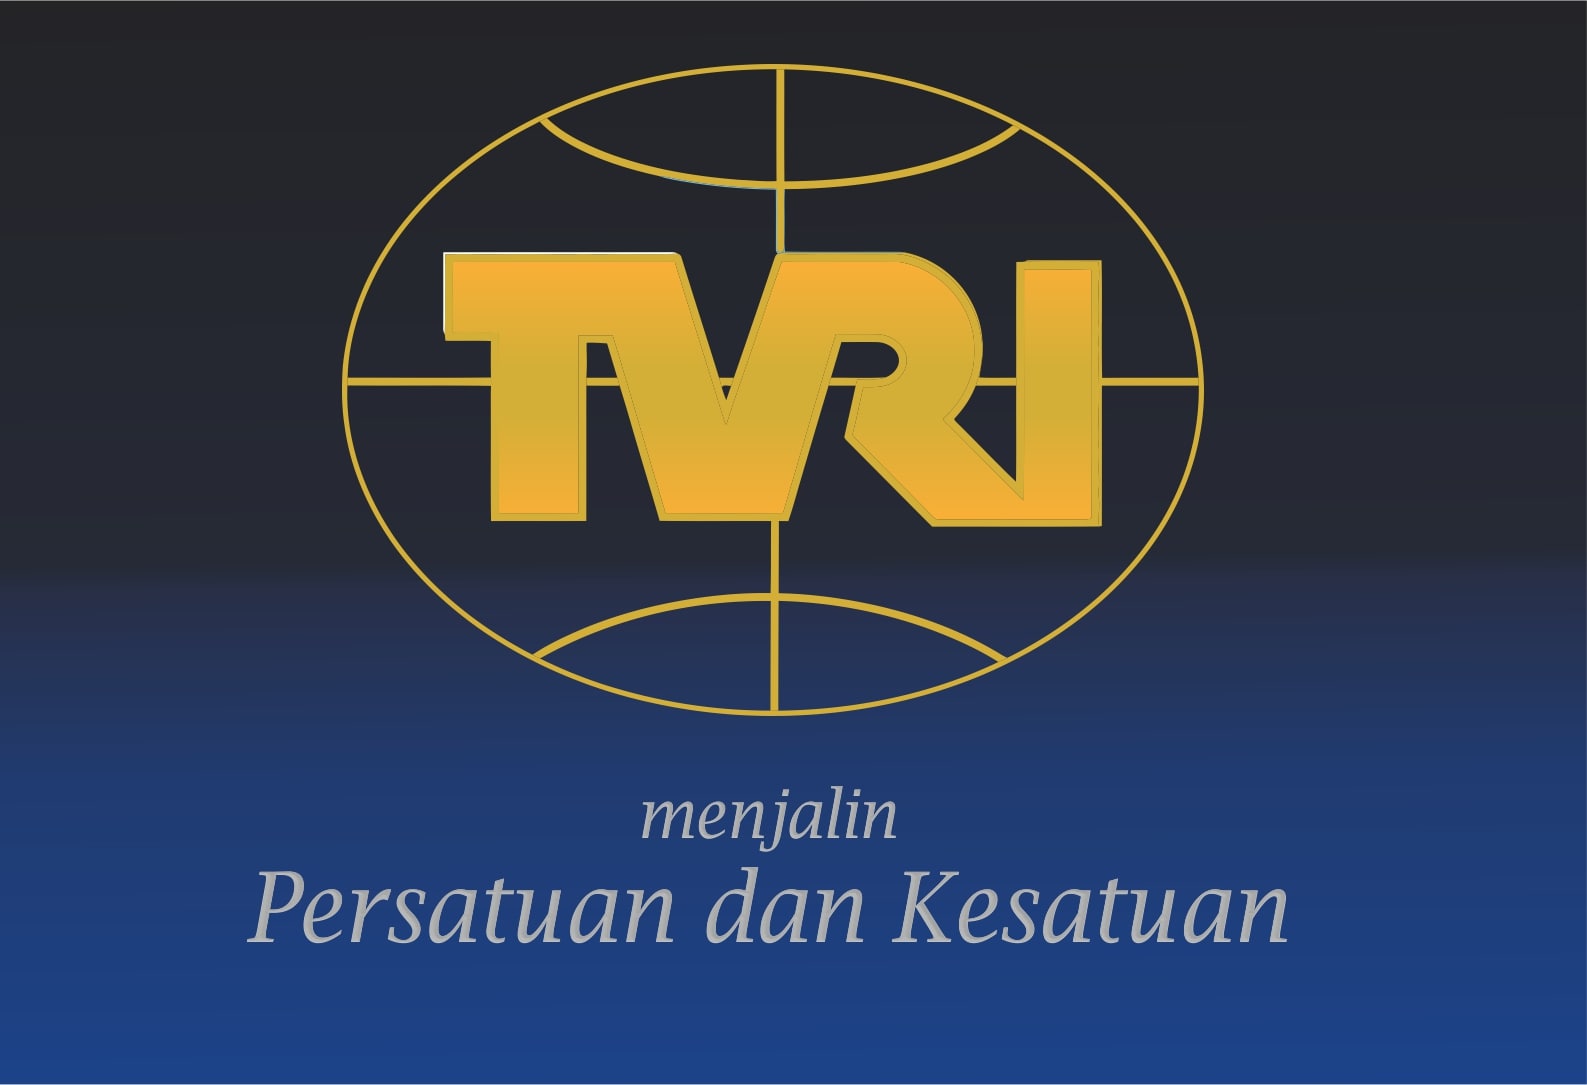 Station ID TVRI (1990-1998)